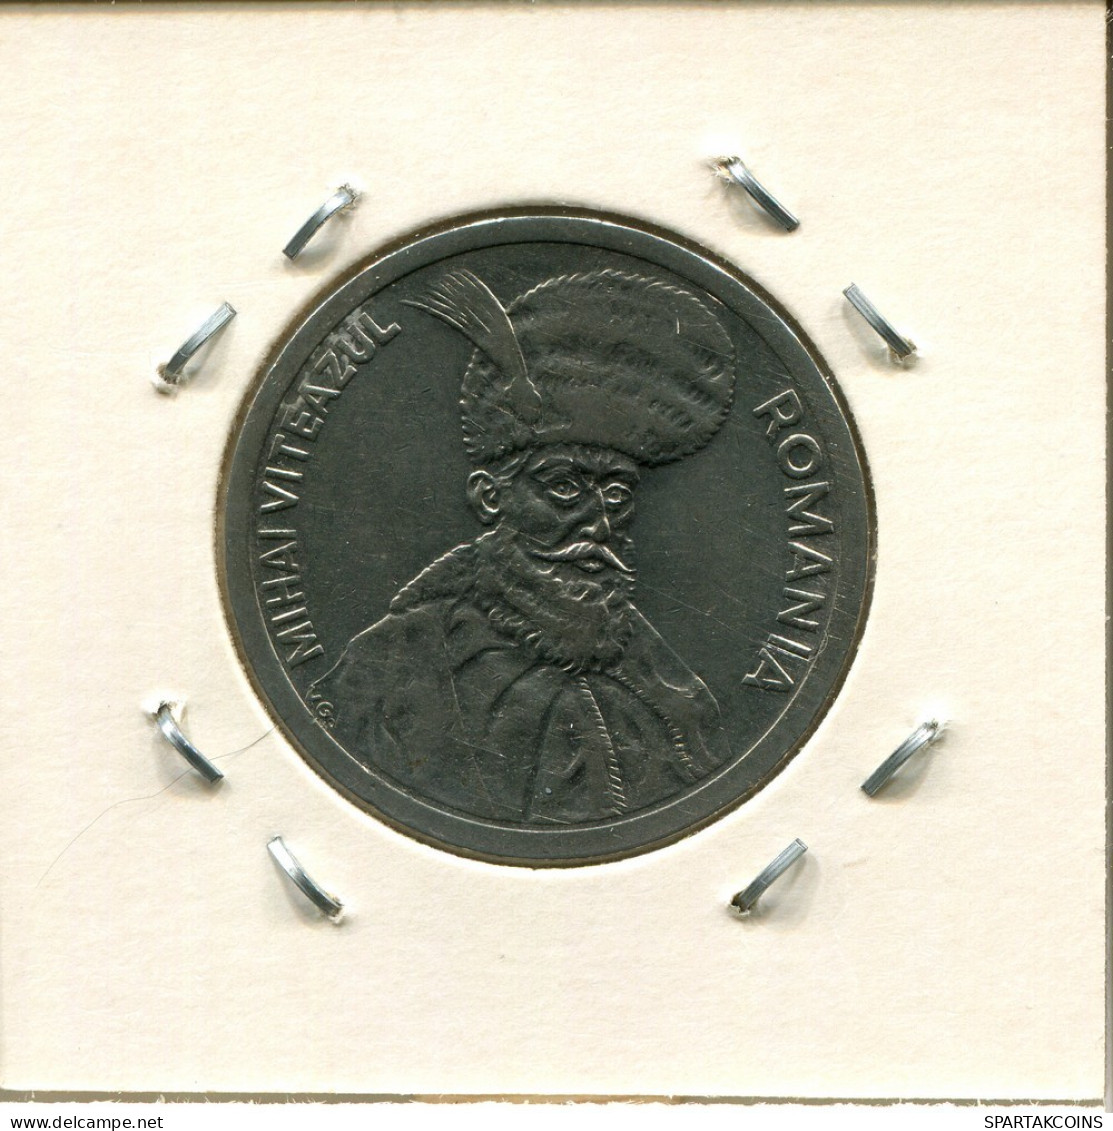 100 LEI 1995 ROMANIA Coin #AP693.2.U.A - Roumanie